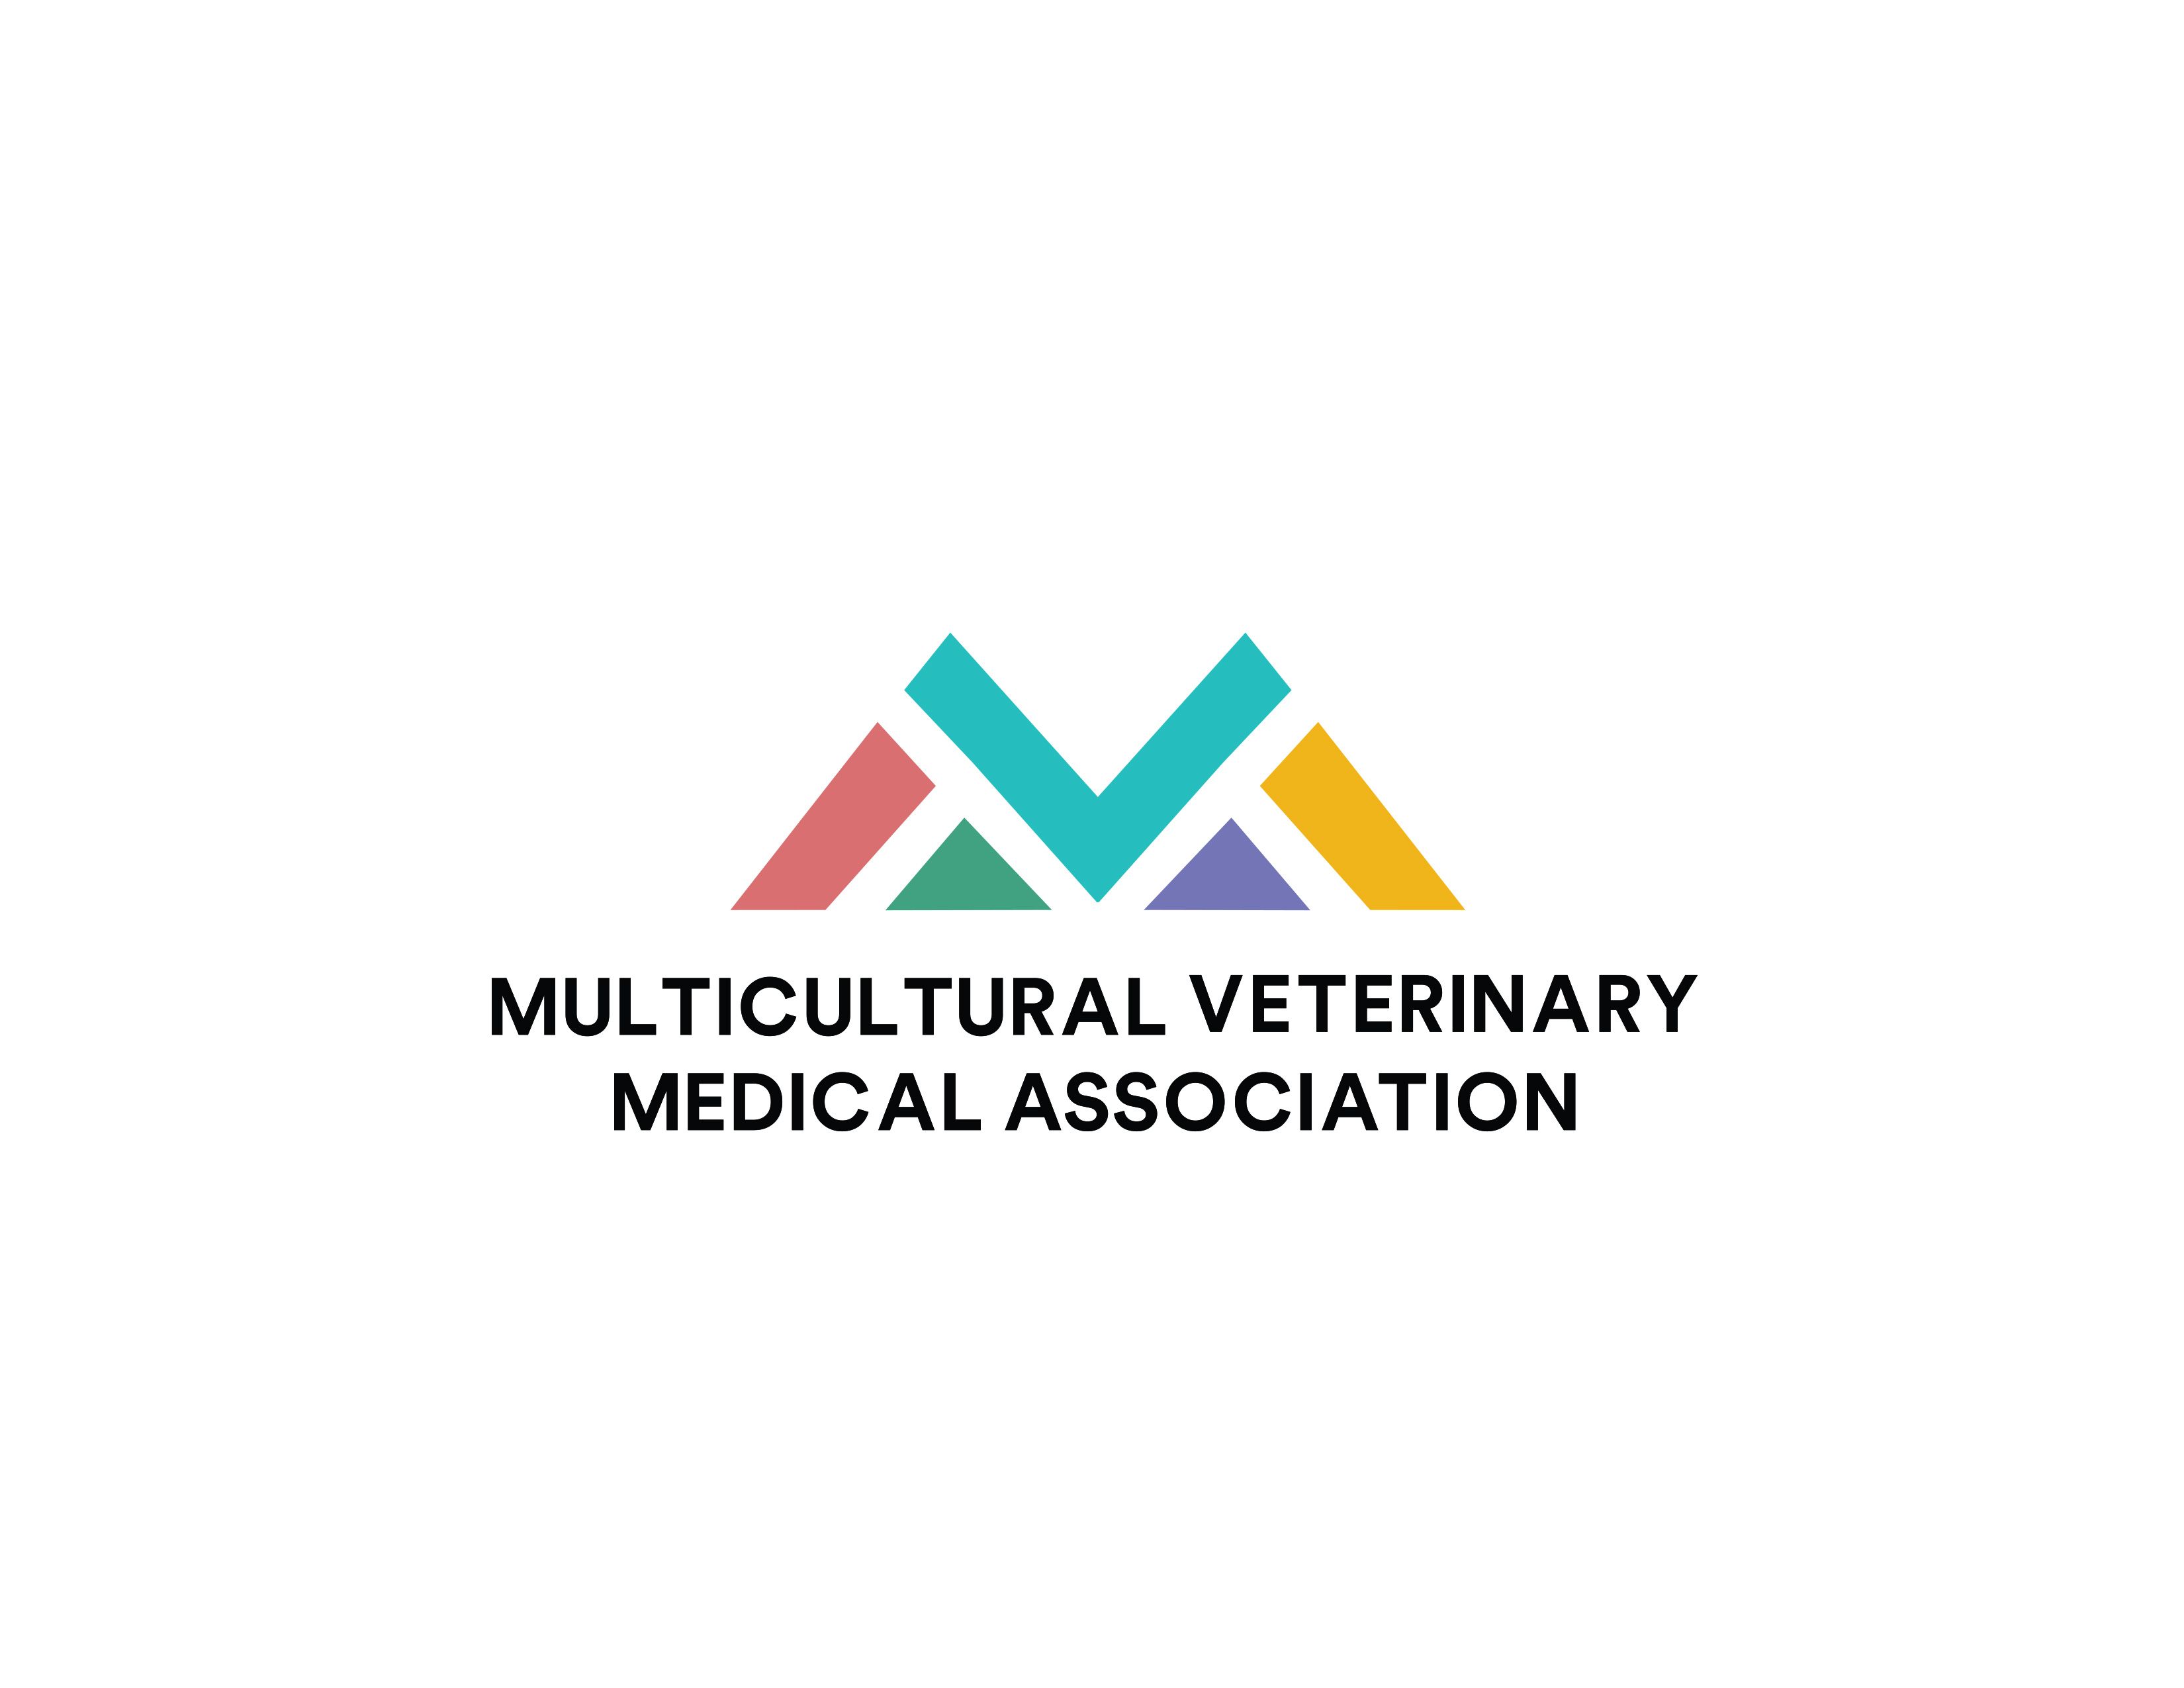 Multicultural Veterinary Medical Association logo